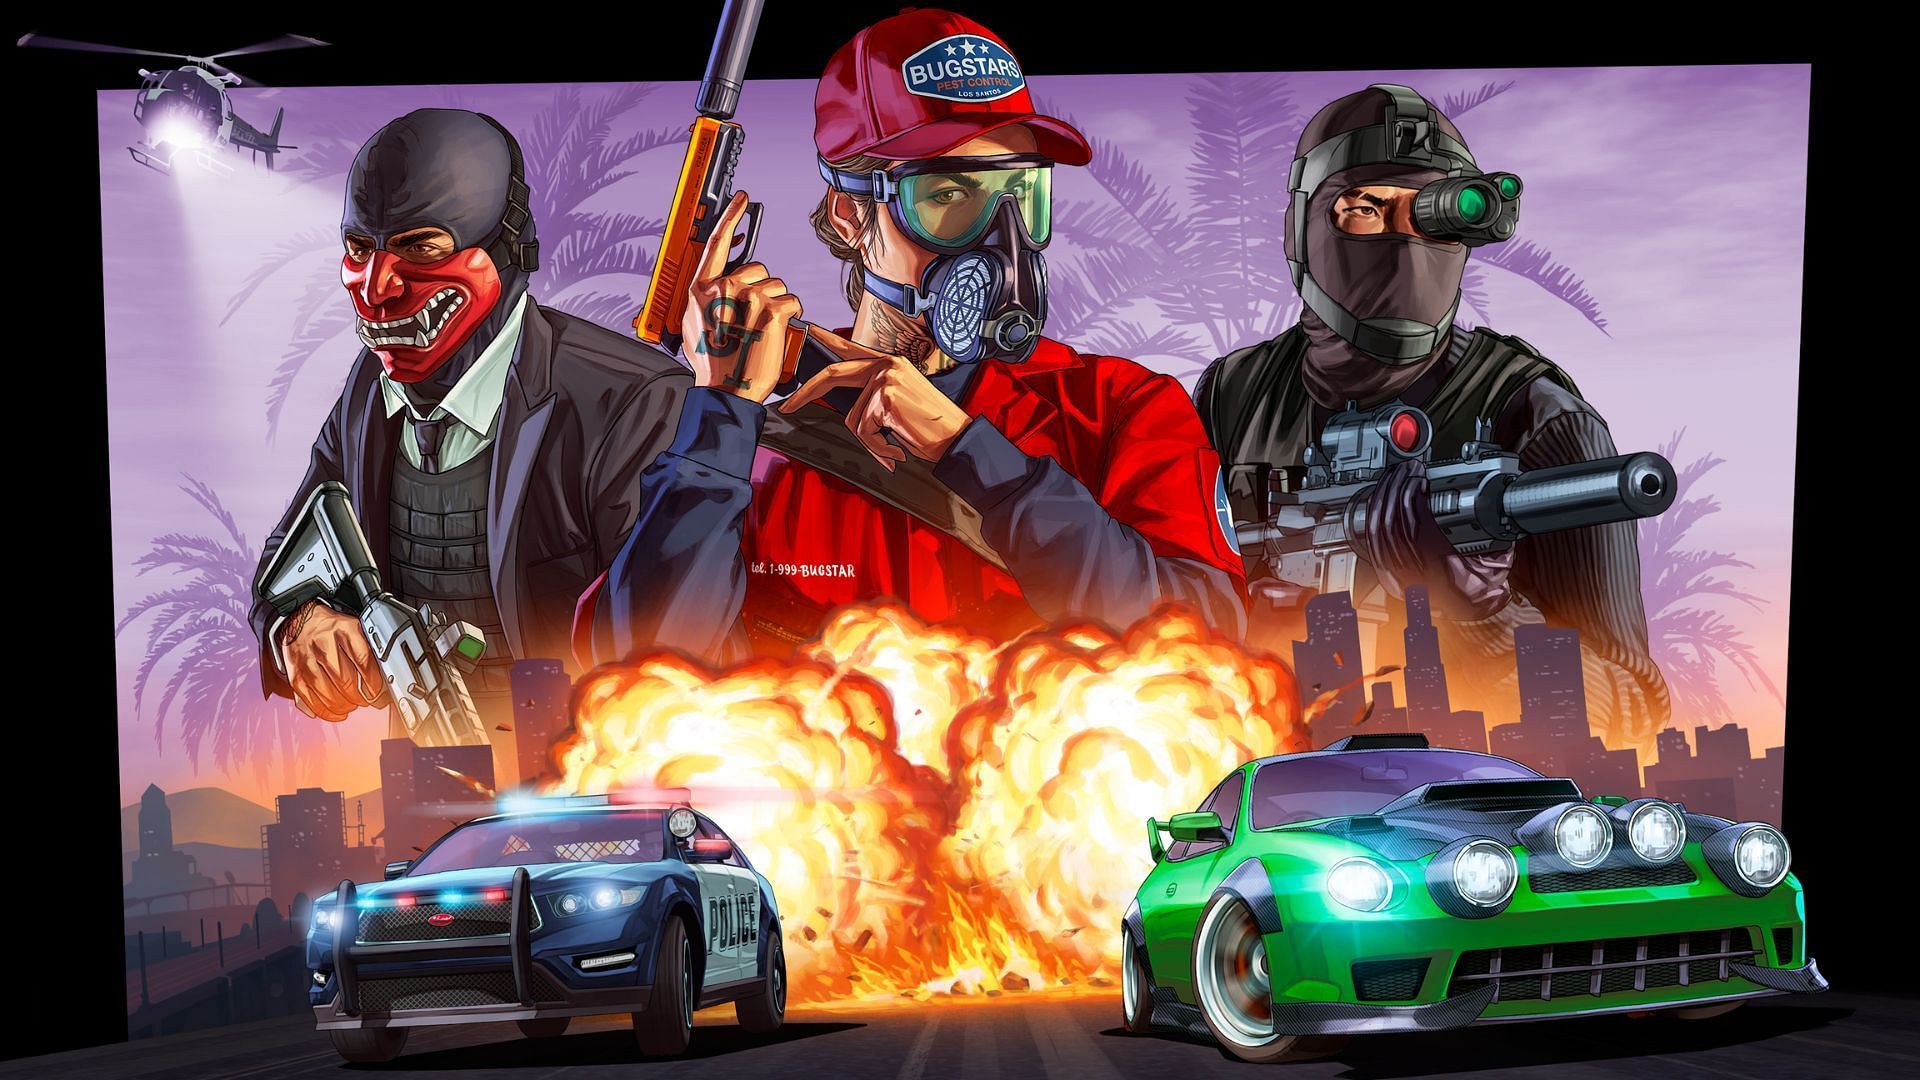 Official artwork of the Grand Theft Auto 5 (Image via Rockstar Games)